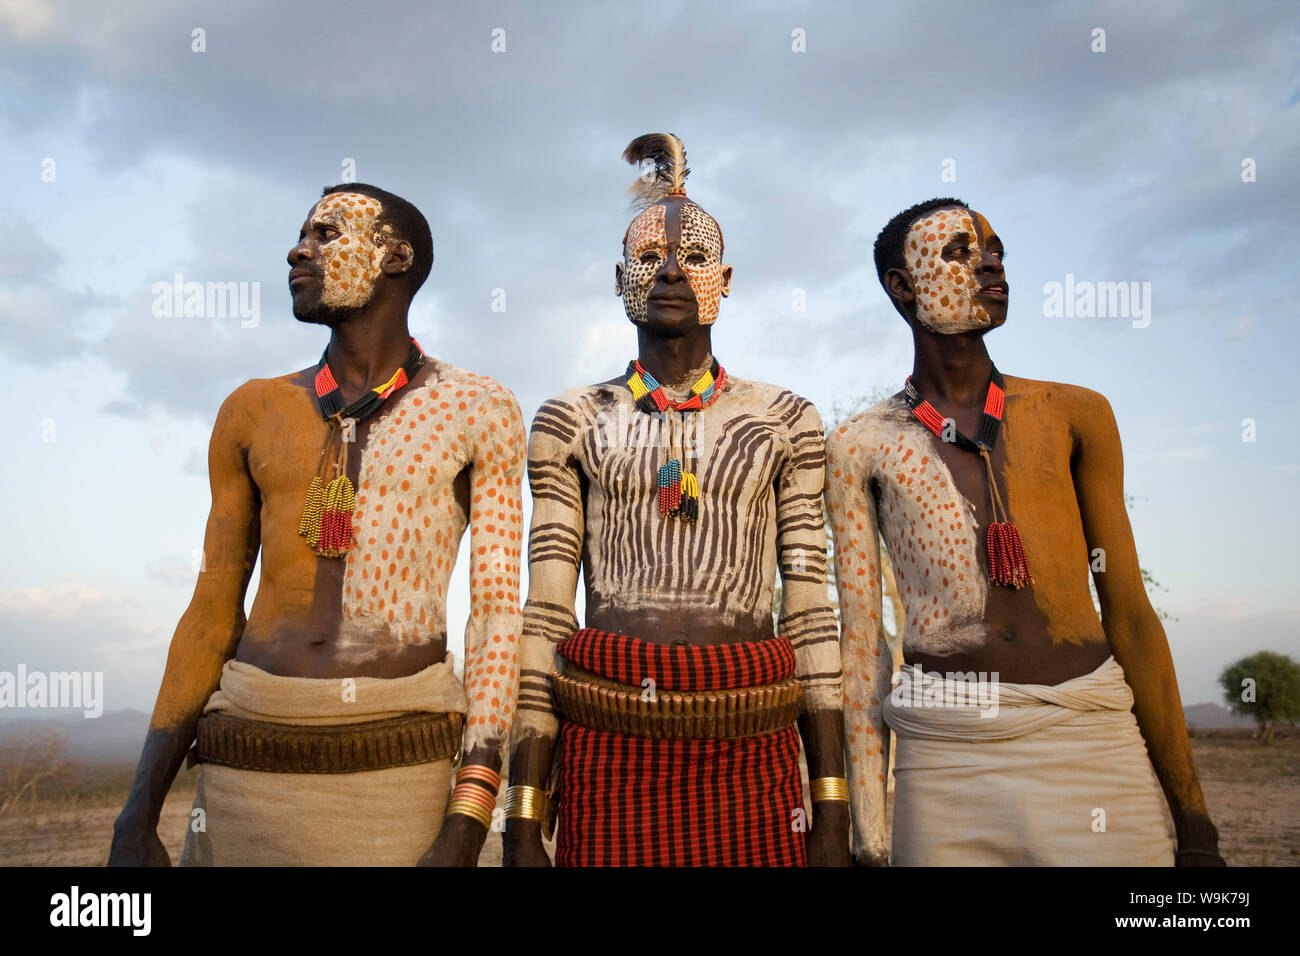 La tribu Karo avec peinture faciale et corporelle imitant le plumage tacheté de la pintade, de la rivière Omo, vallée de l'Omo, Ethiopie, Afrique Banque D'Images